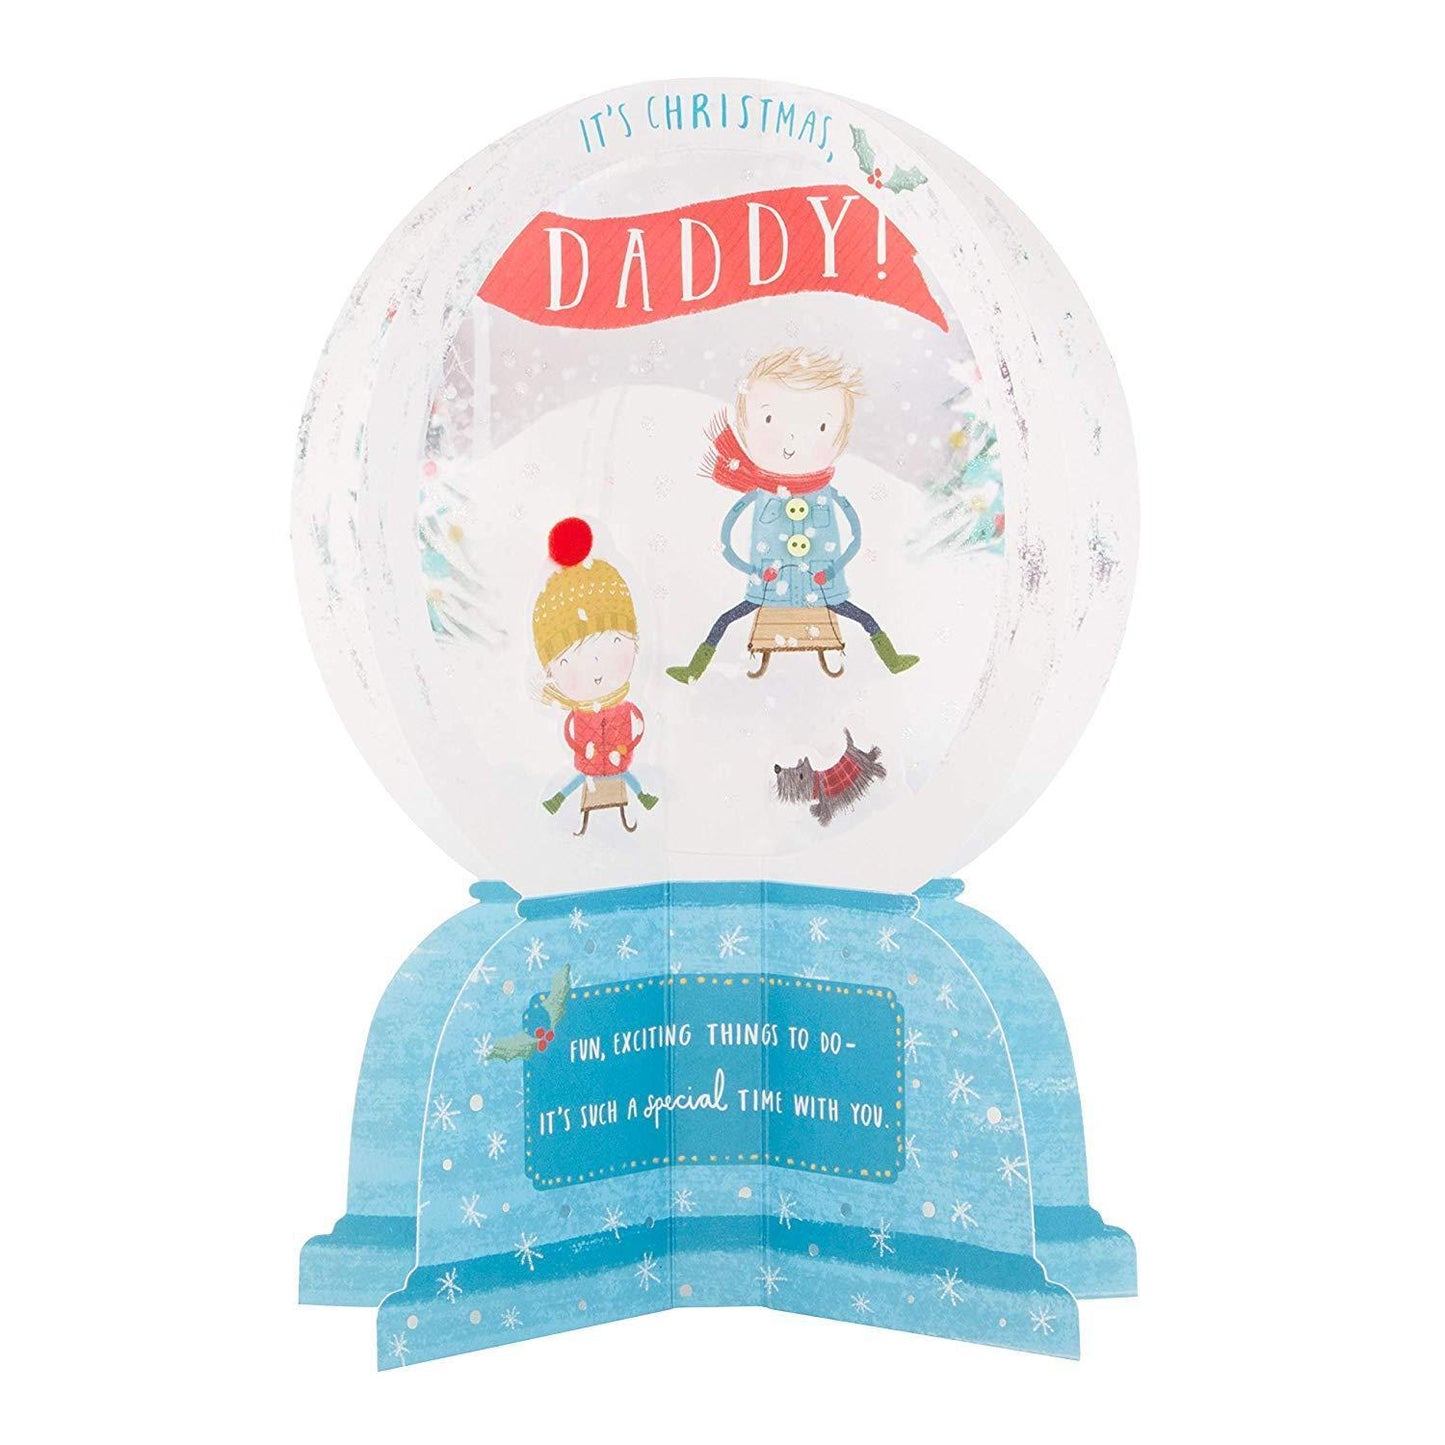 3D Daddy Christmas Card 'Snow Globe' 